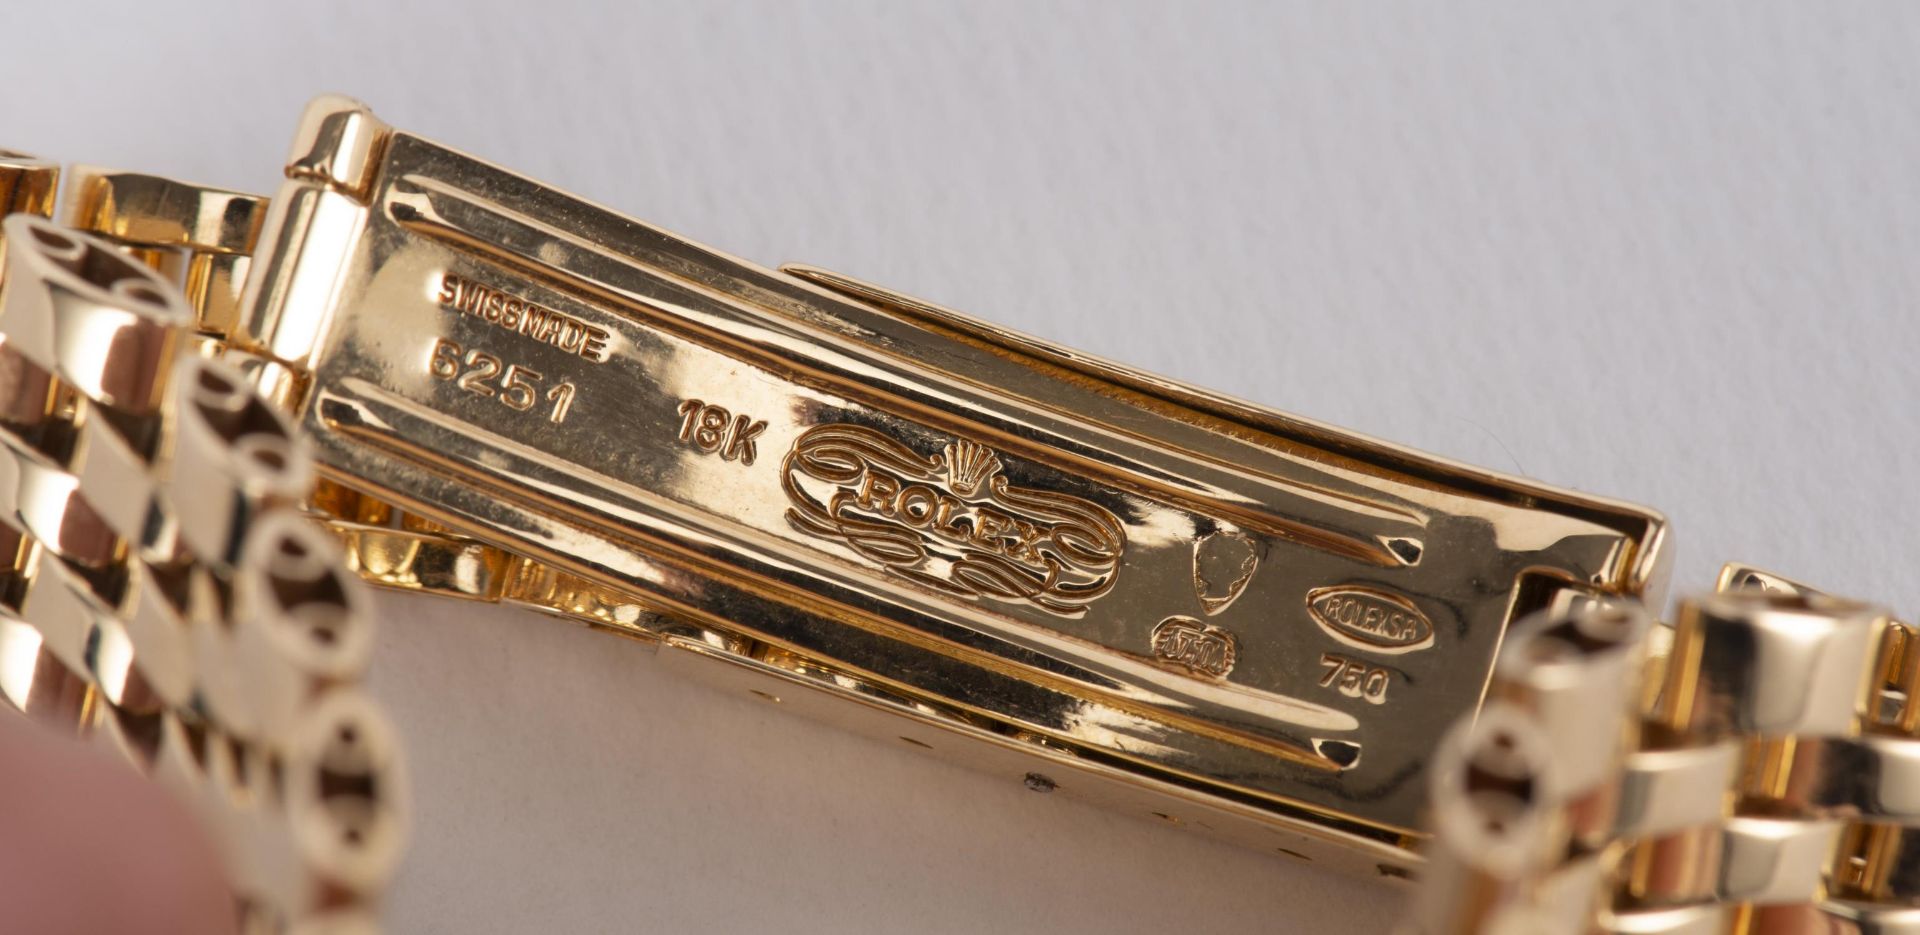 Rolex Oyster Perpetual Lady Datejust automatic, montre-bracelet de dame avec bracelet [...] - Image 3 of 4